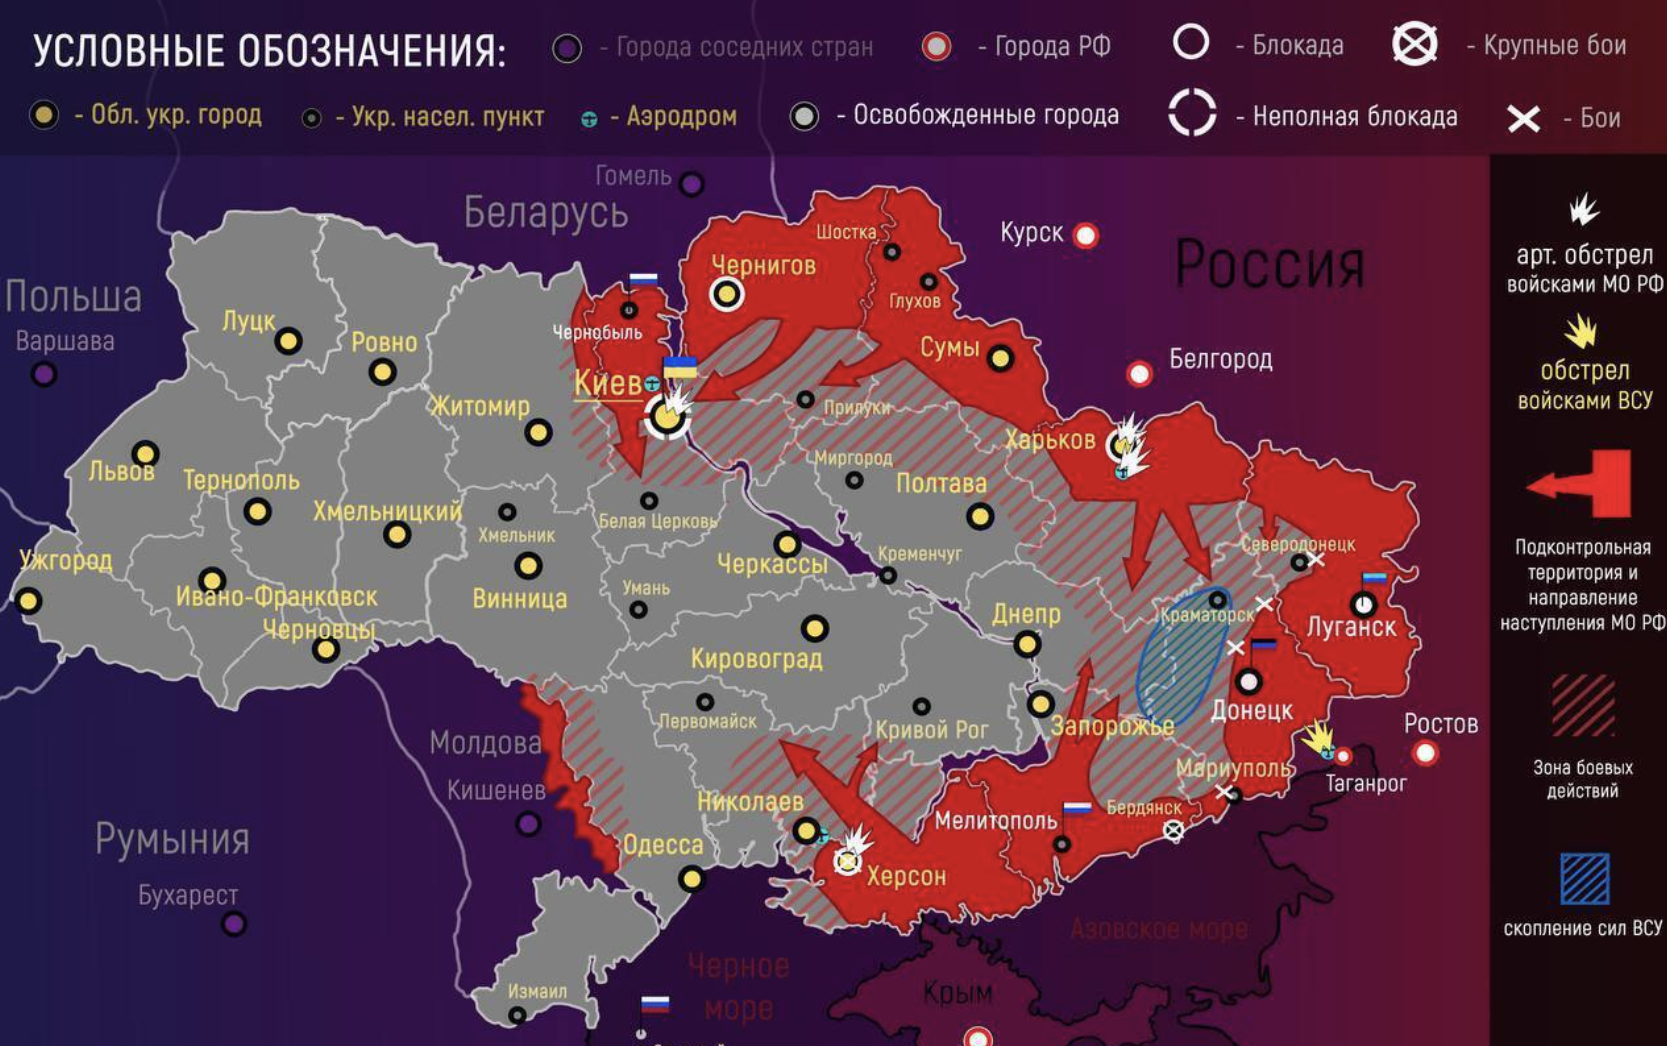 Операция на украине дата начала. Карта Украины с военными действиями сейчас 2022 сегодня. Карта боевых действий на Украине на 10.04.2022. Украинская карта войны на Украине. Карта военных действий на Украине сегодня сейчас 04.04.2022.